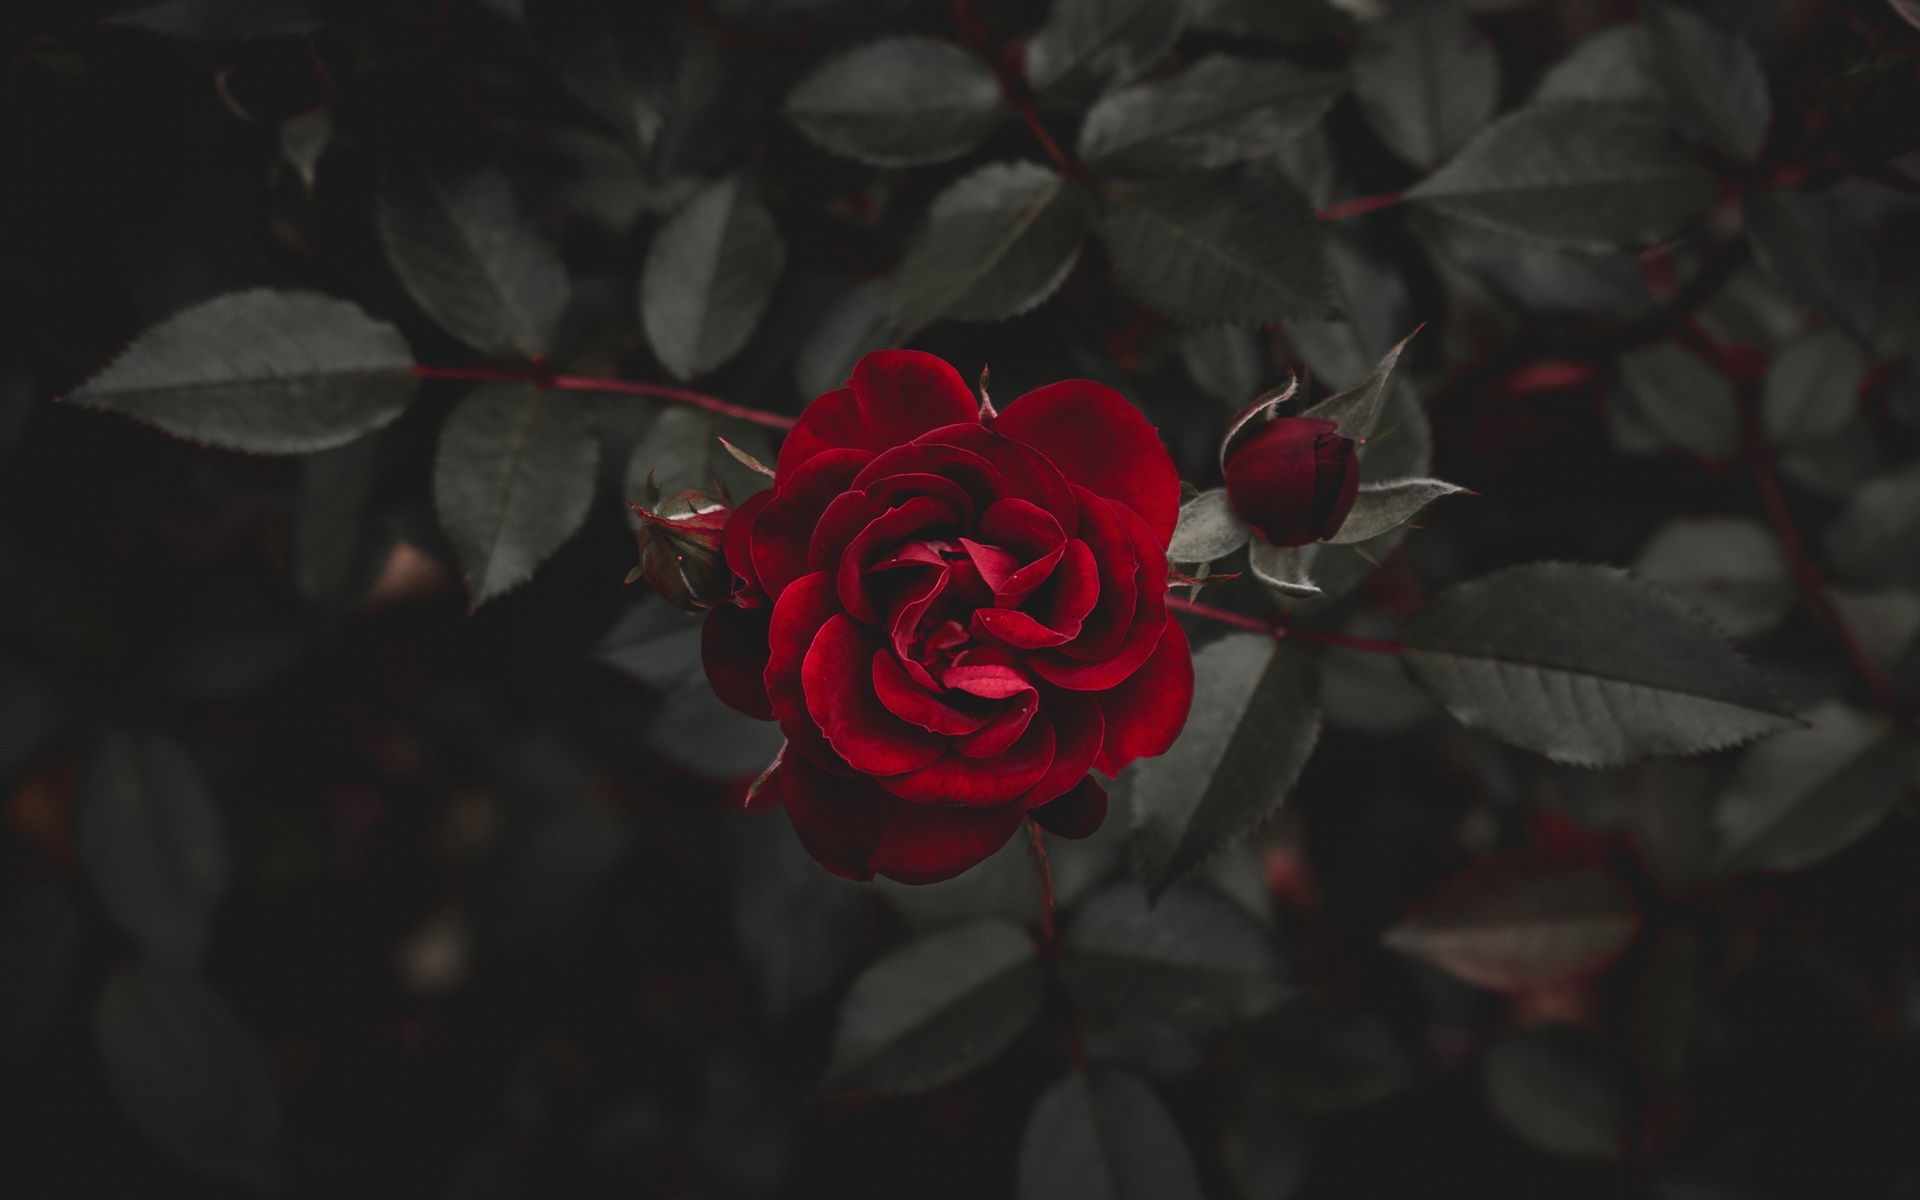 Tải về Hình nền hoa hồng - Bộ ảnh hoa hồng đẹp, lãng mạn